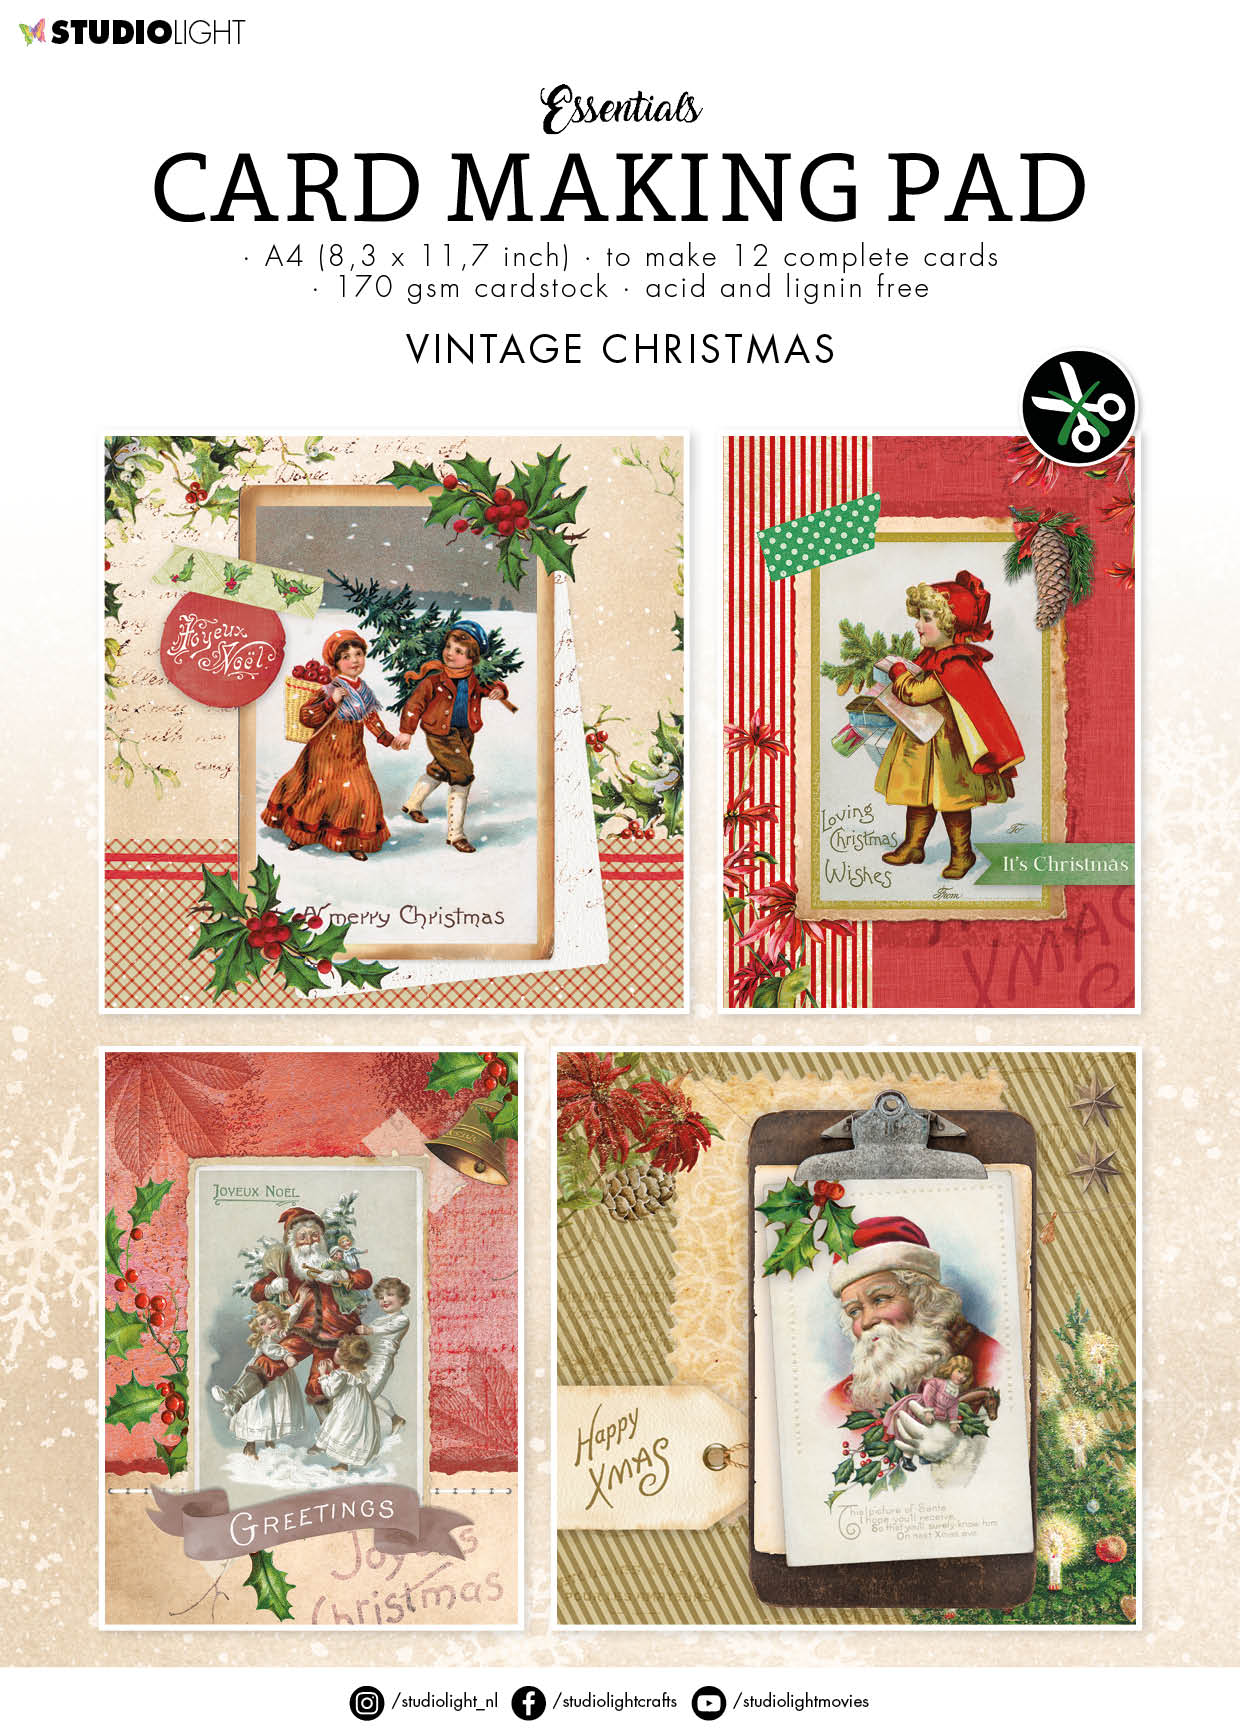 SL Card Making Pad Vintage Christmas Essentials 210x294x5mm 12 SH nr.10